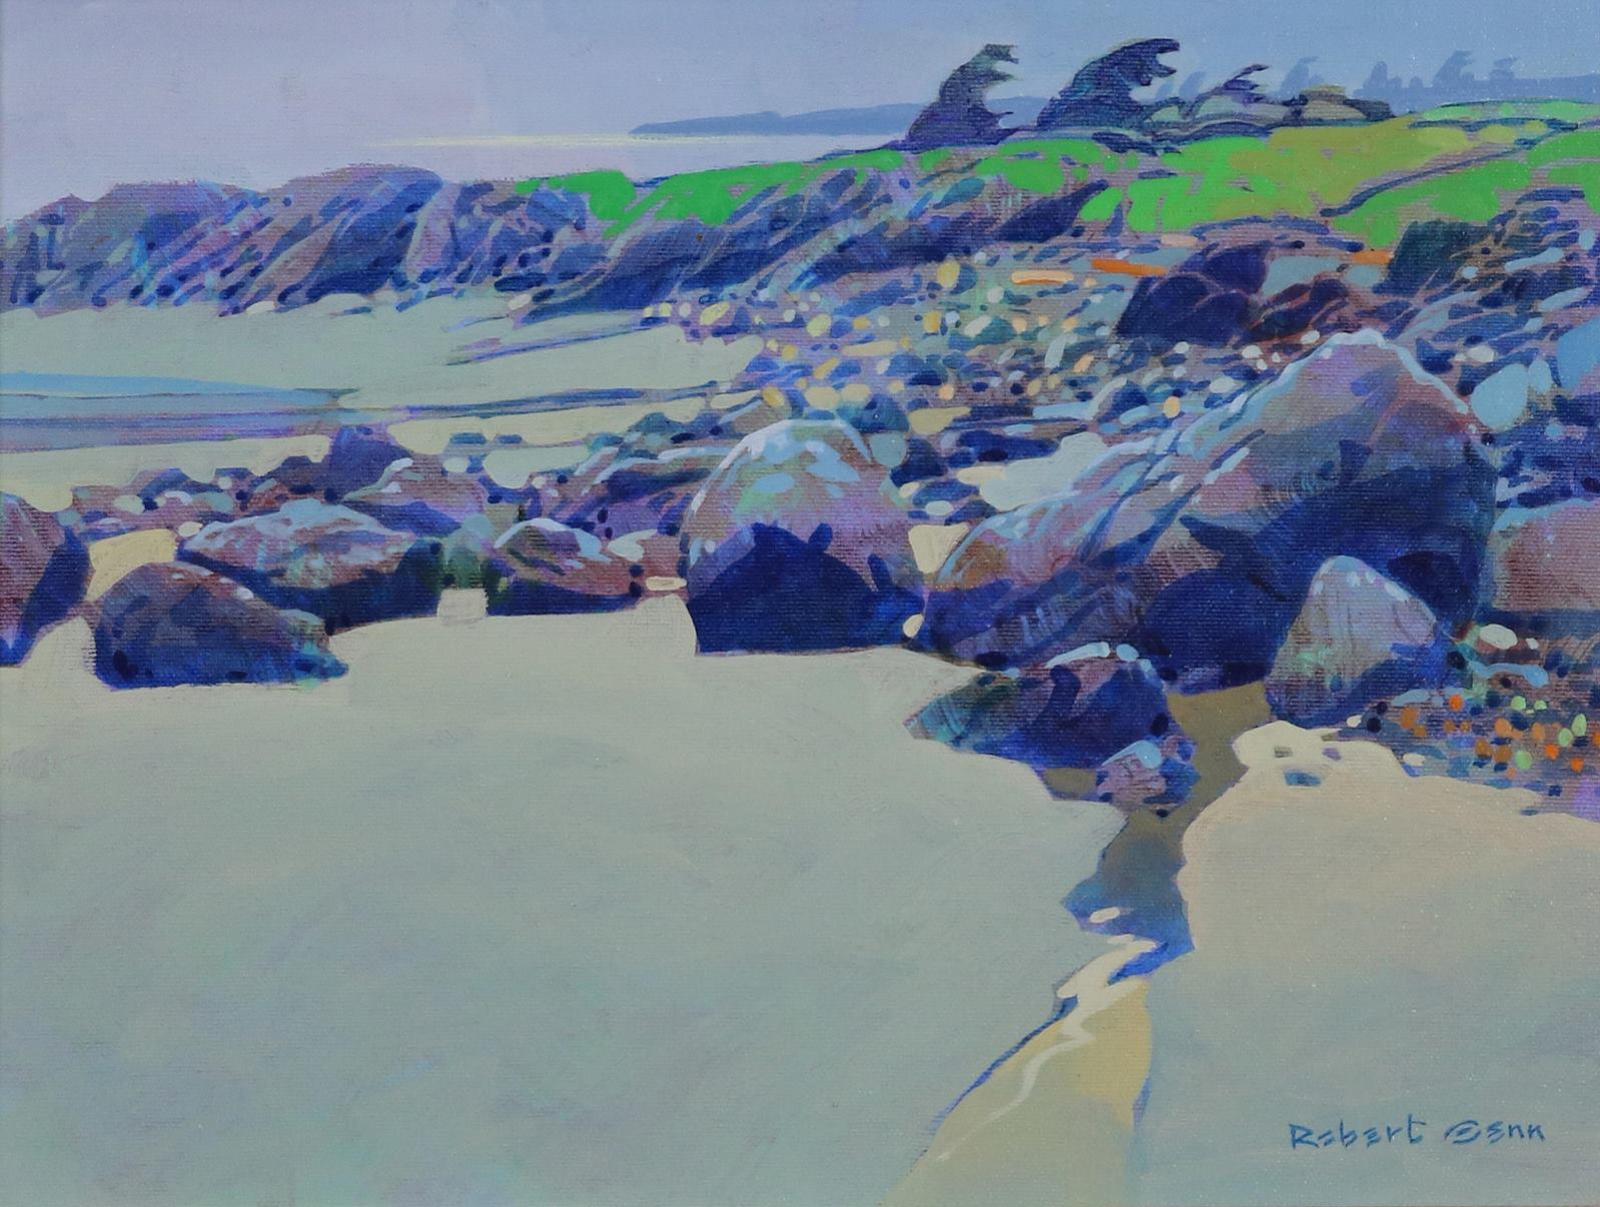 Robert Douglas Genn (1936-2014) - Sketch, Calvert Island